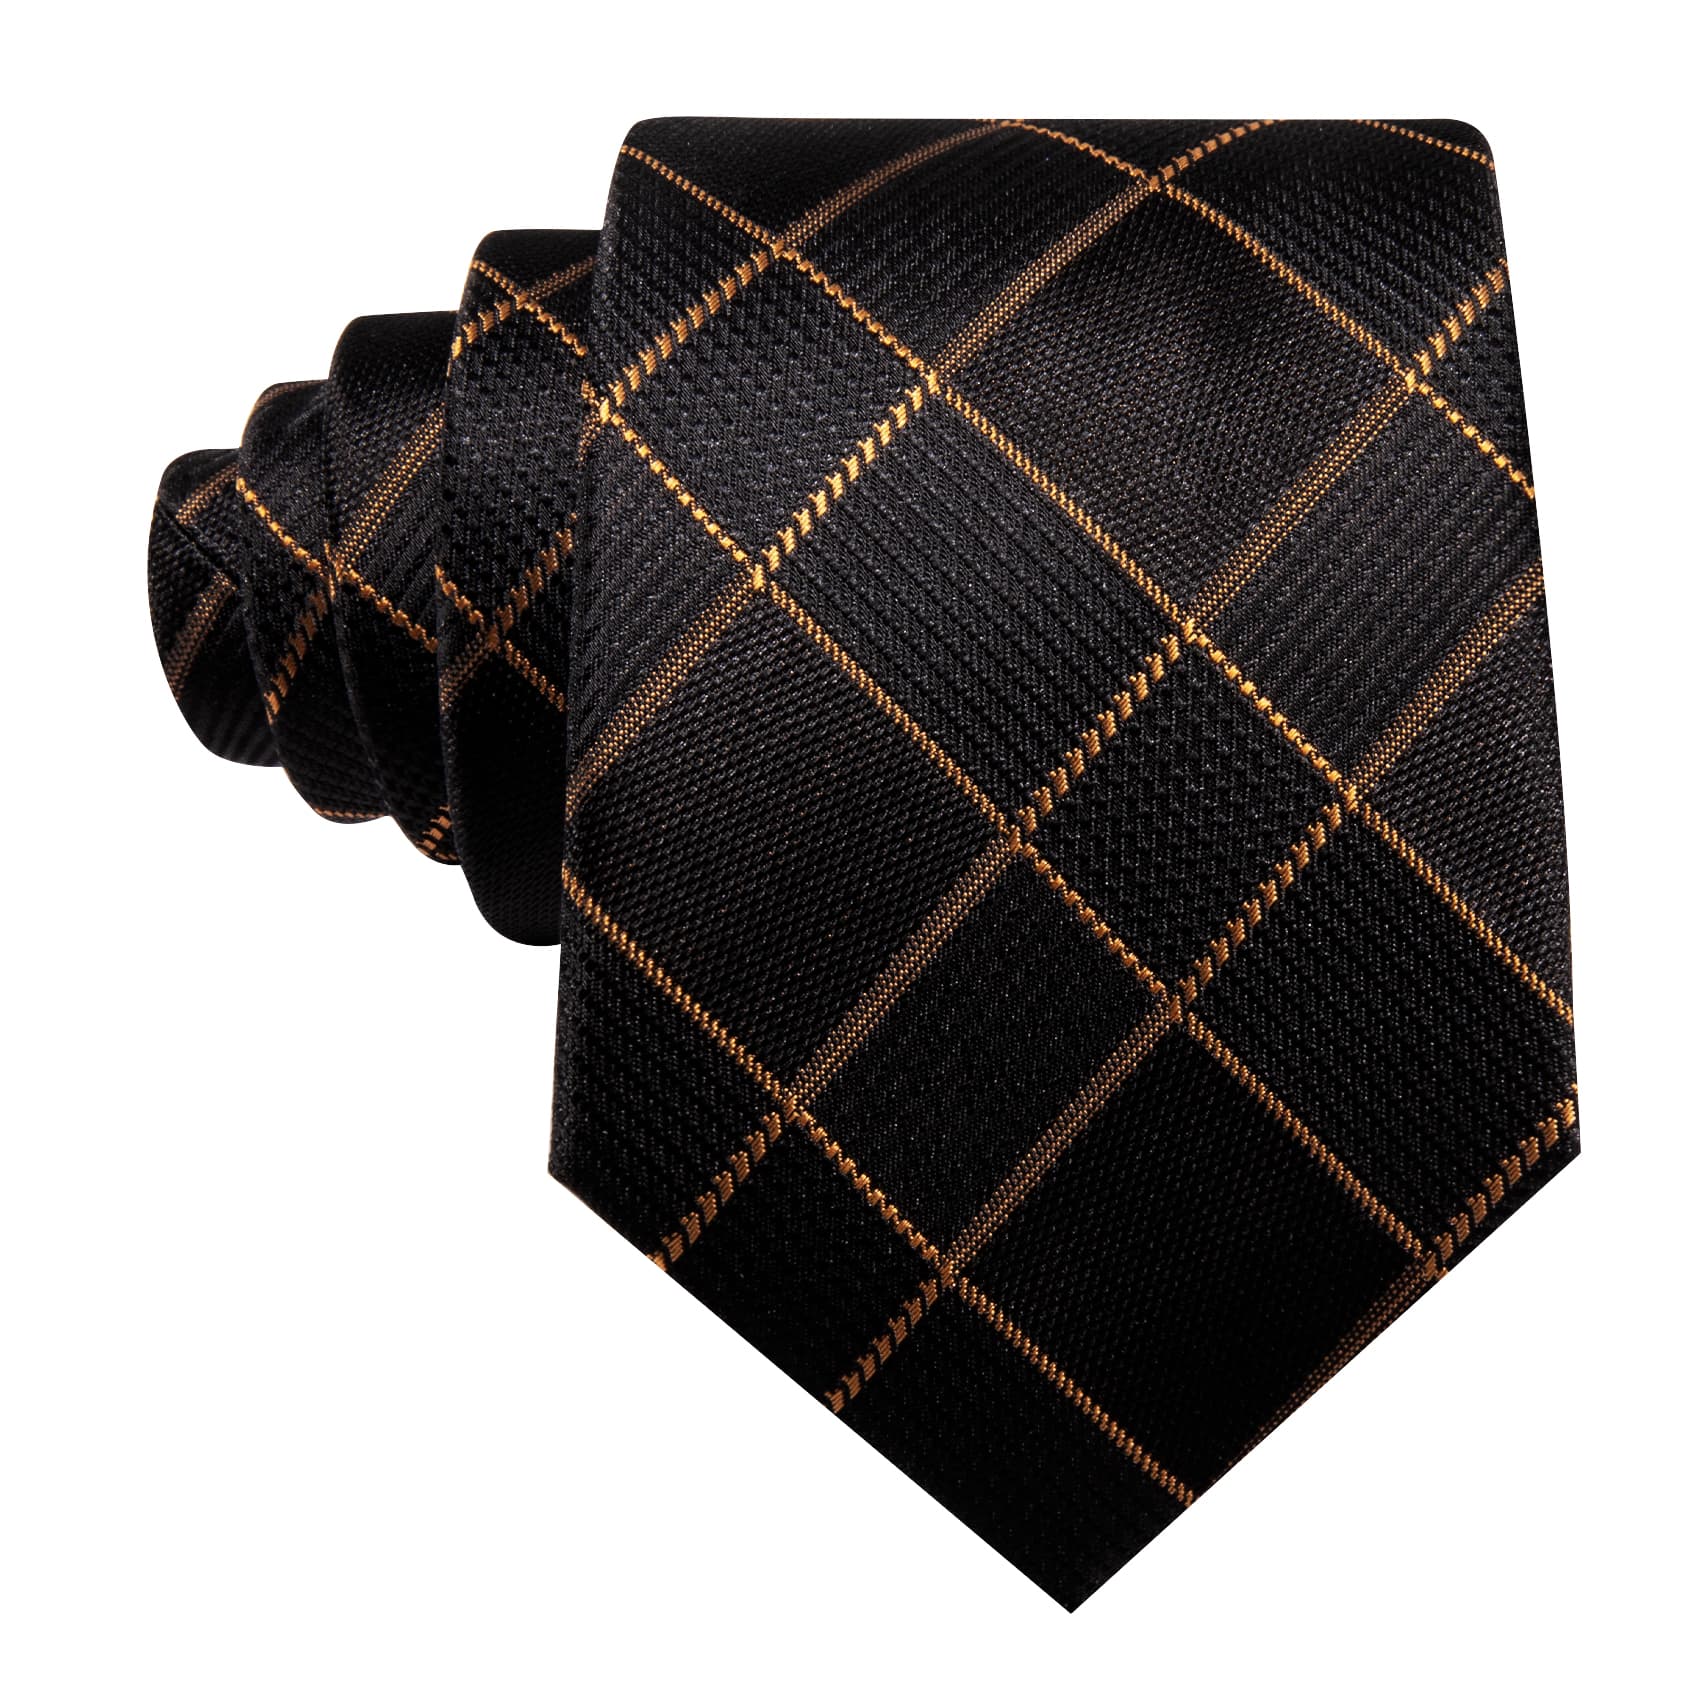  Black Plaid Tie with Golden Stripes Men's Business Set